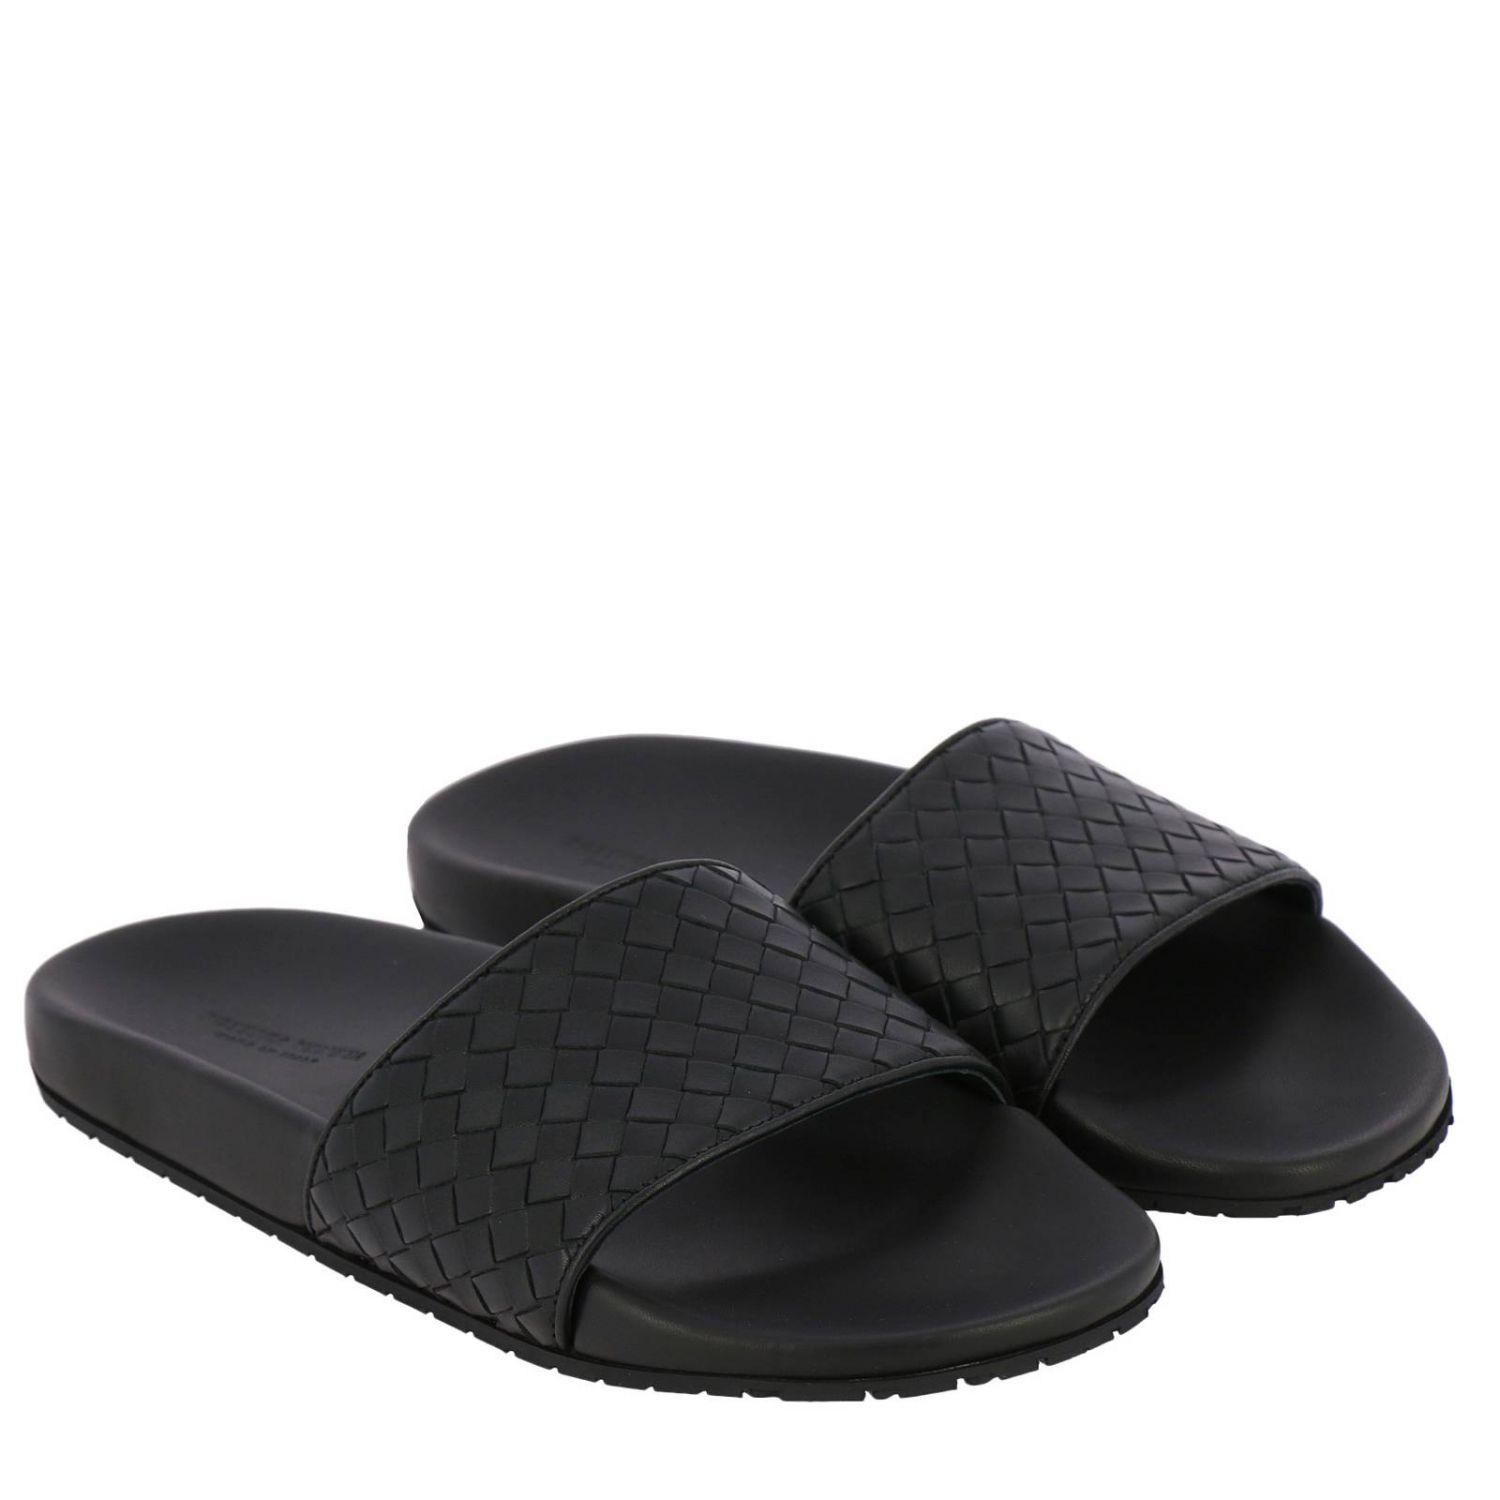 Bottega Veneta Leather Men's Sandals in Black for Men - Lyst